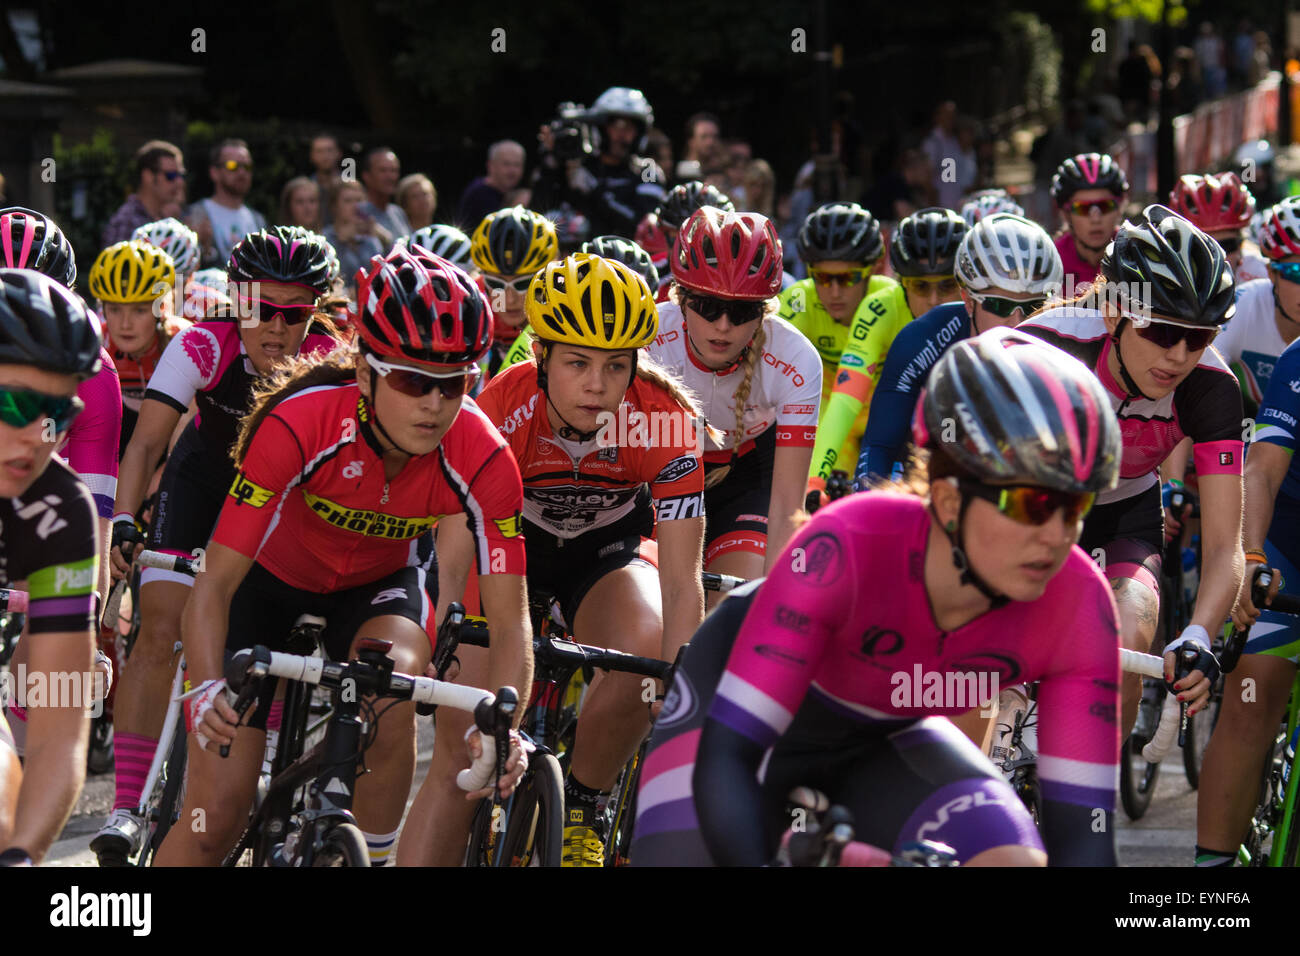 Westminster, Londres, 1er août 2015. Top femmes cyclistes concurrence dans le Prudential Ride Grand Prix de Londres autour de St James's Park. Banque D'Images